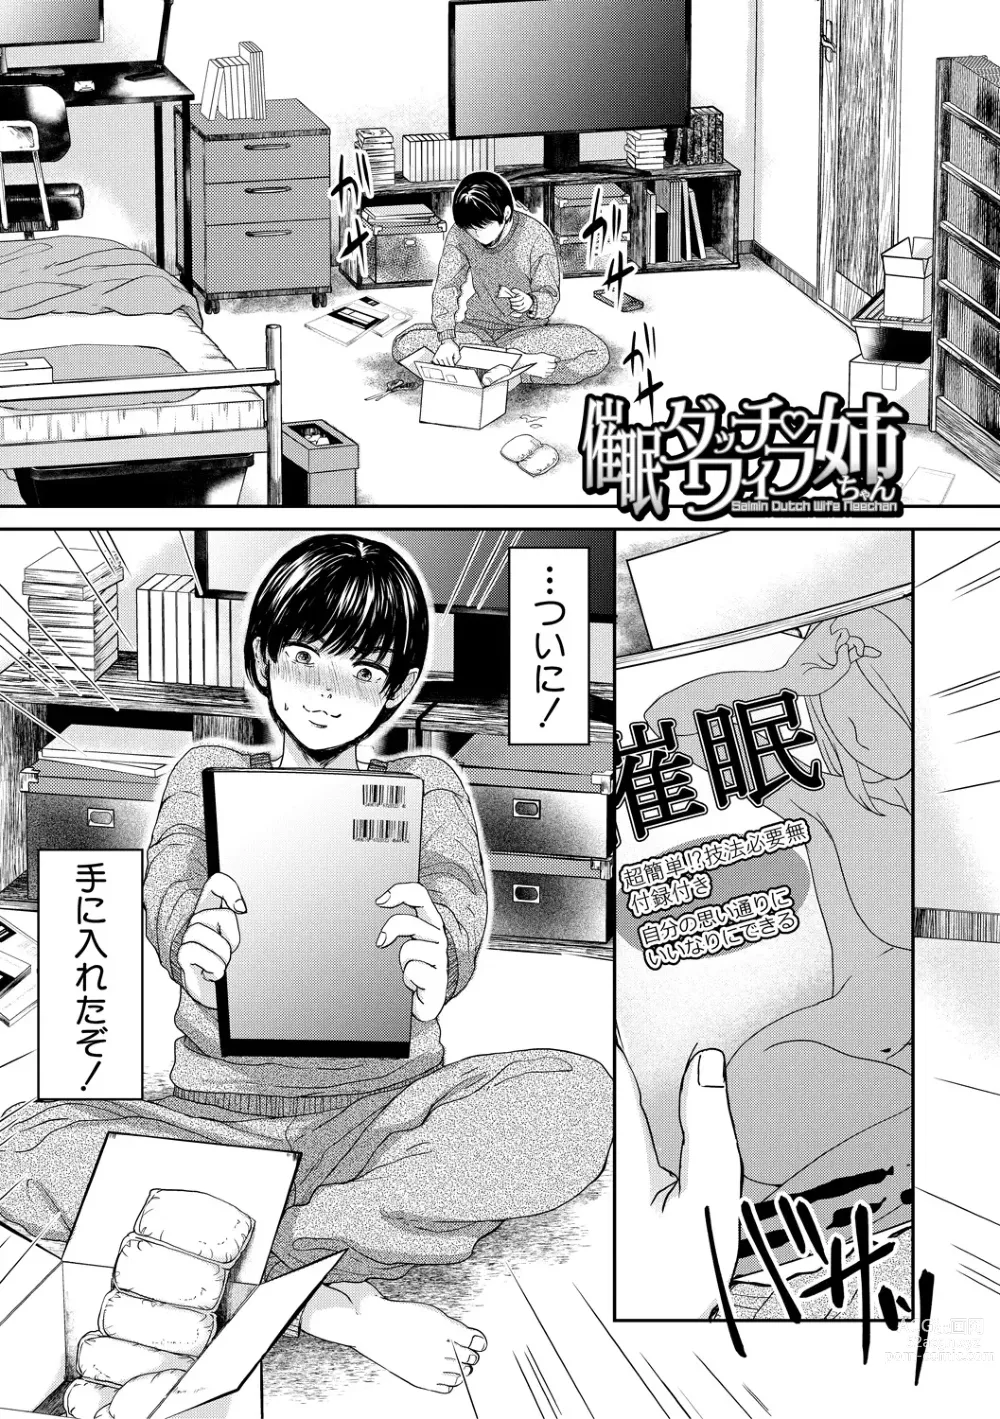 Page 3 of manga Shiborikiri Ane Body